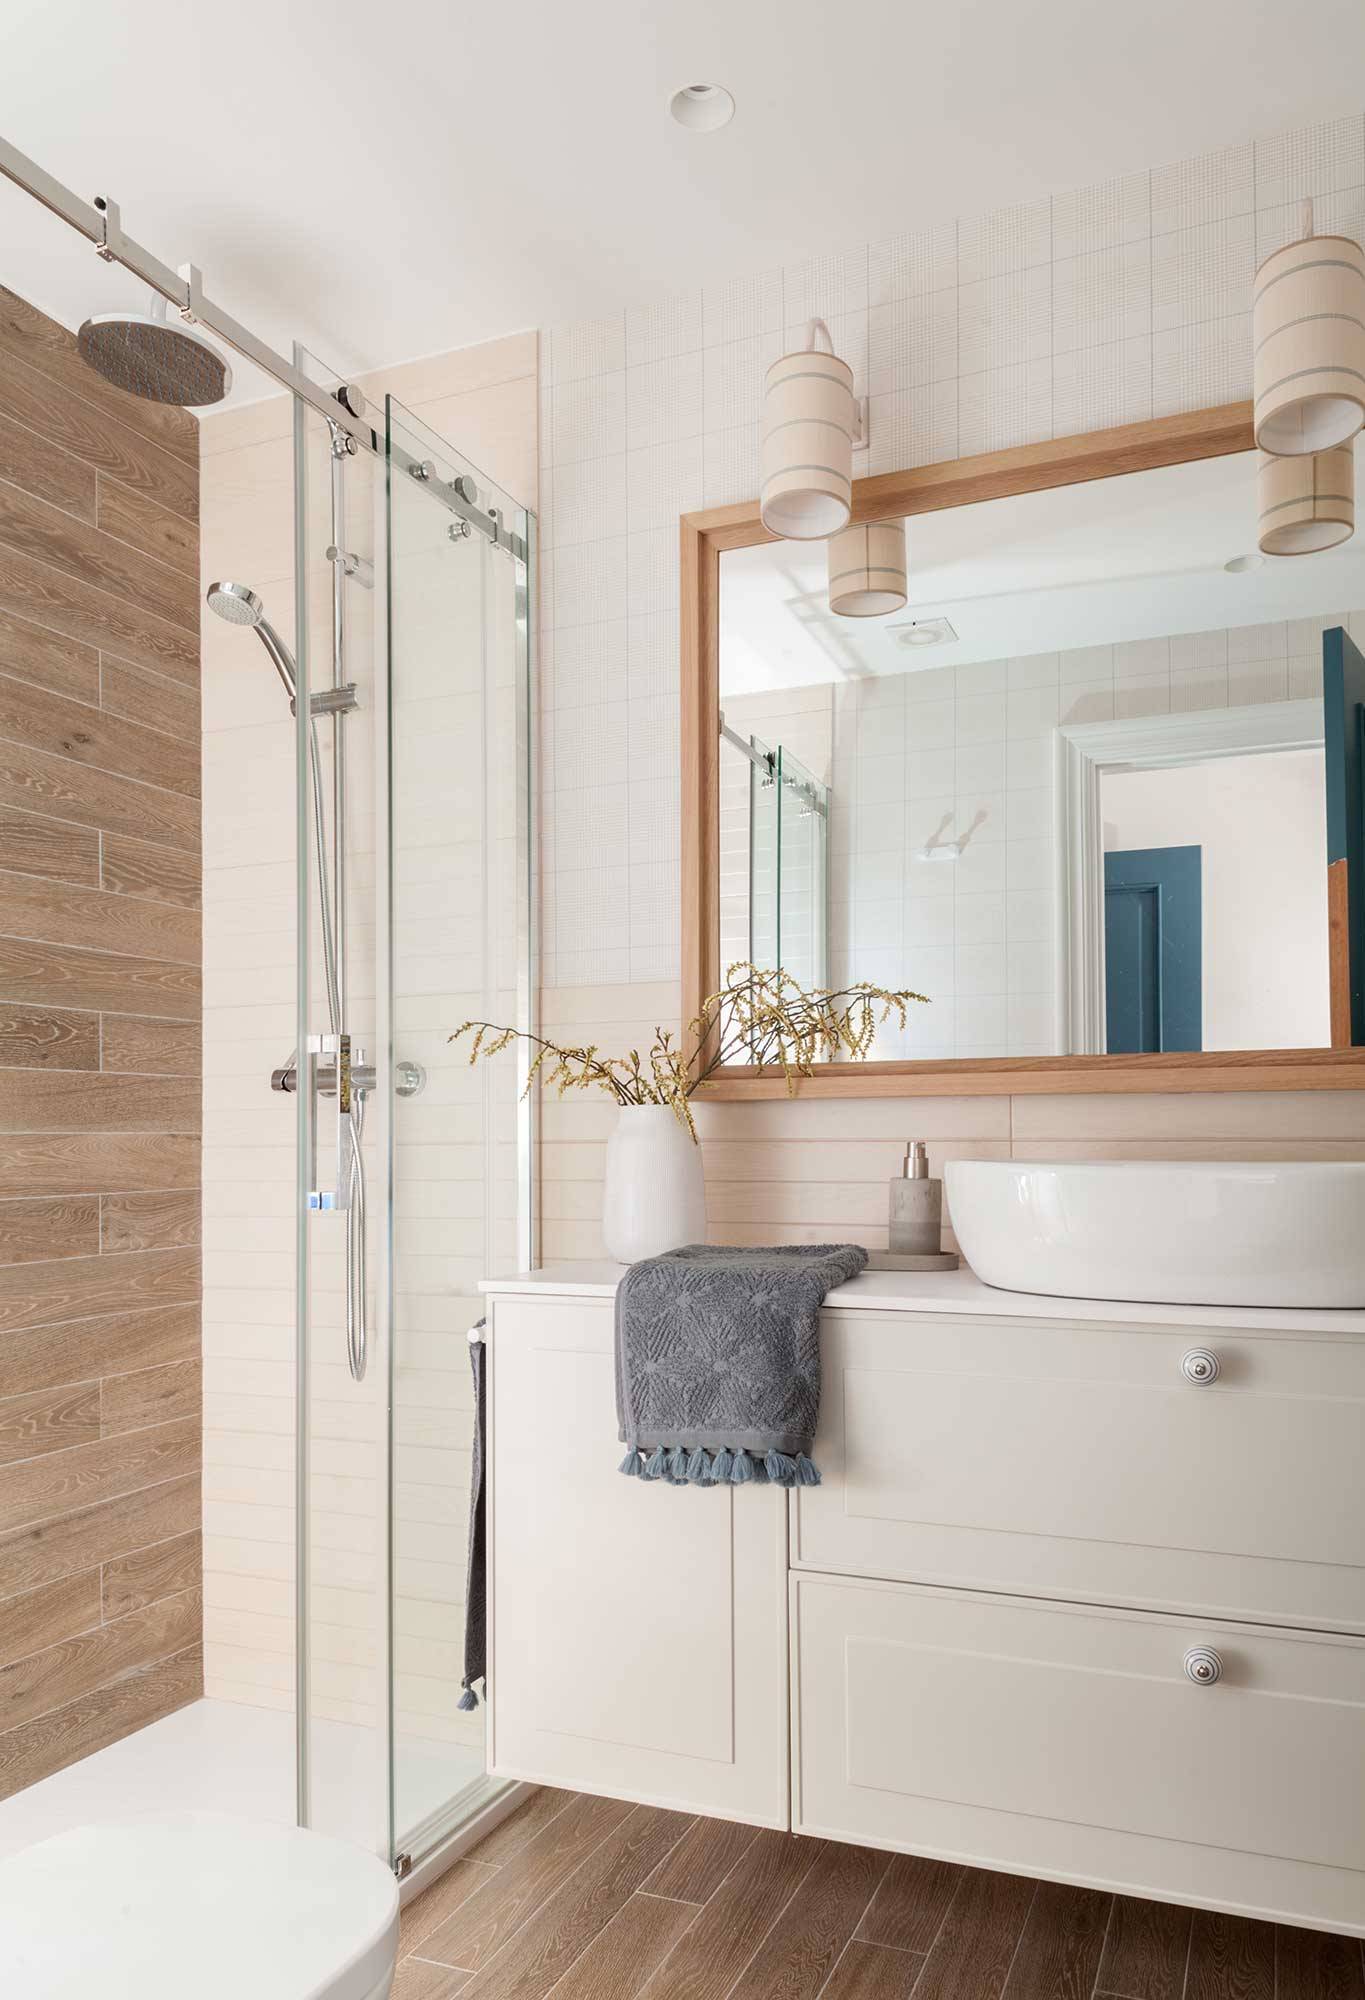 Baño pequeño con ducha grande con pared revestida de madera cerámica y gran mueble de baño